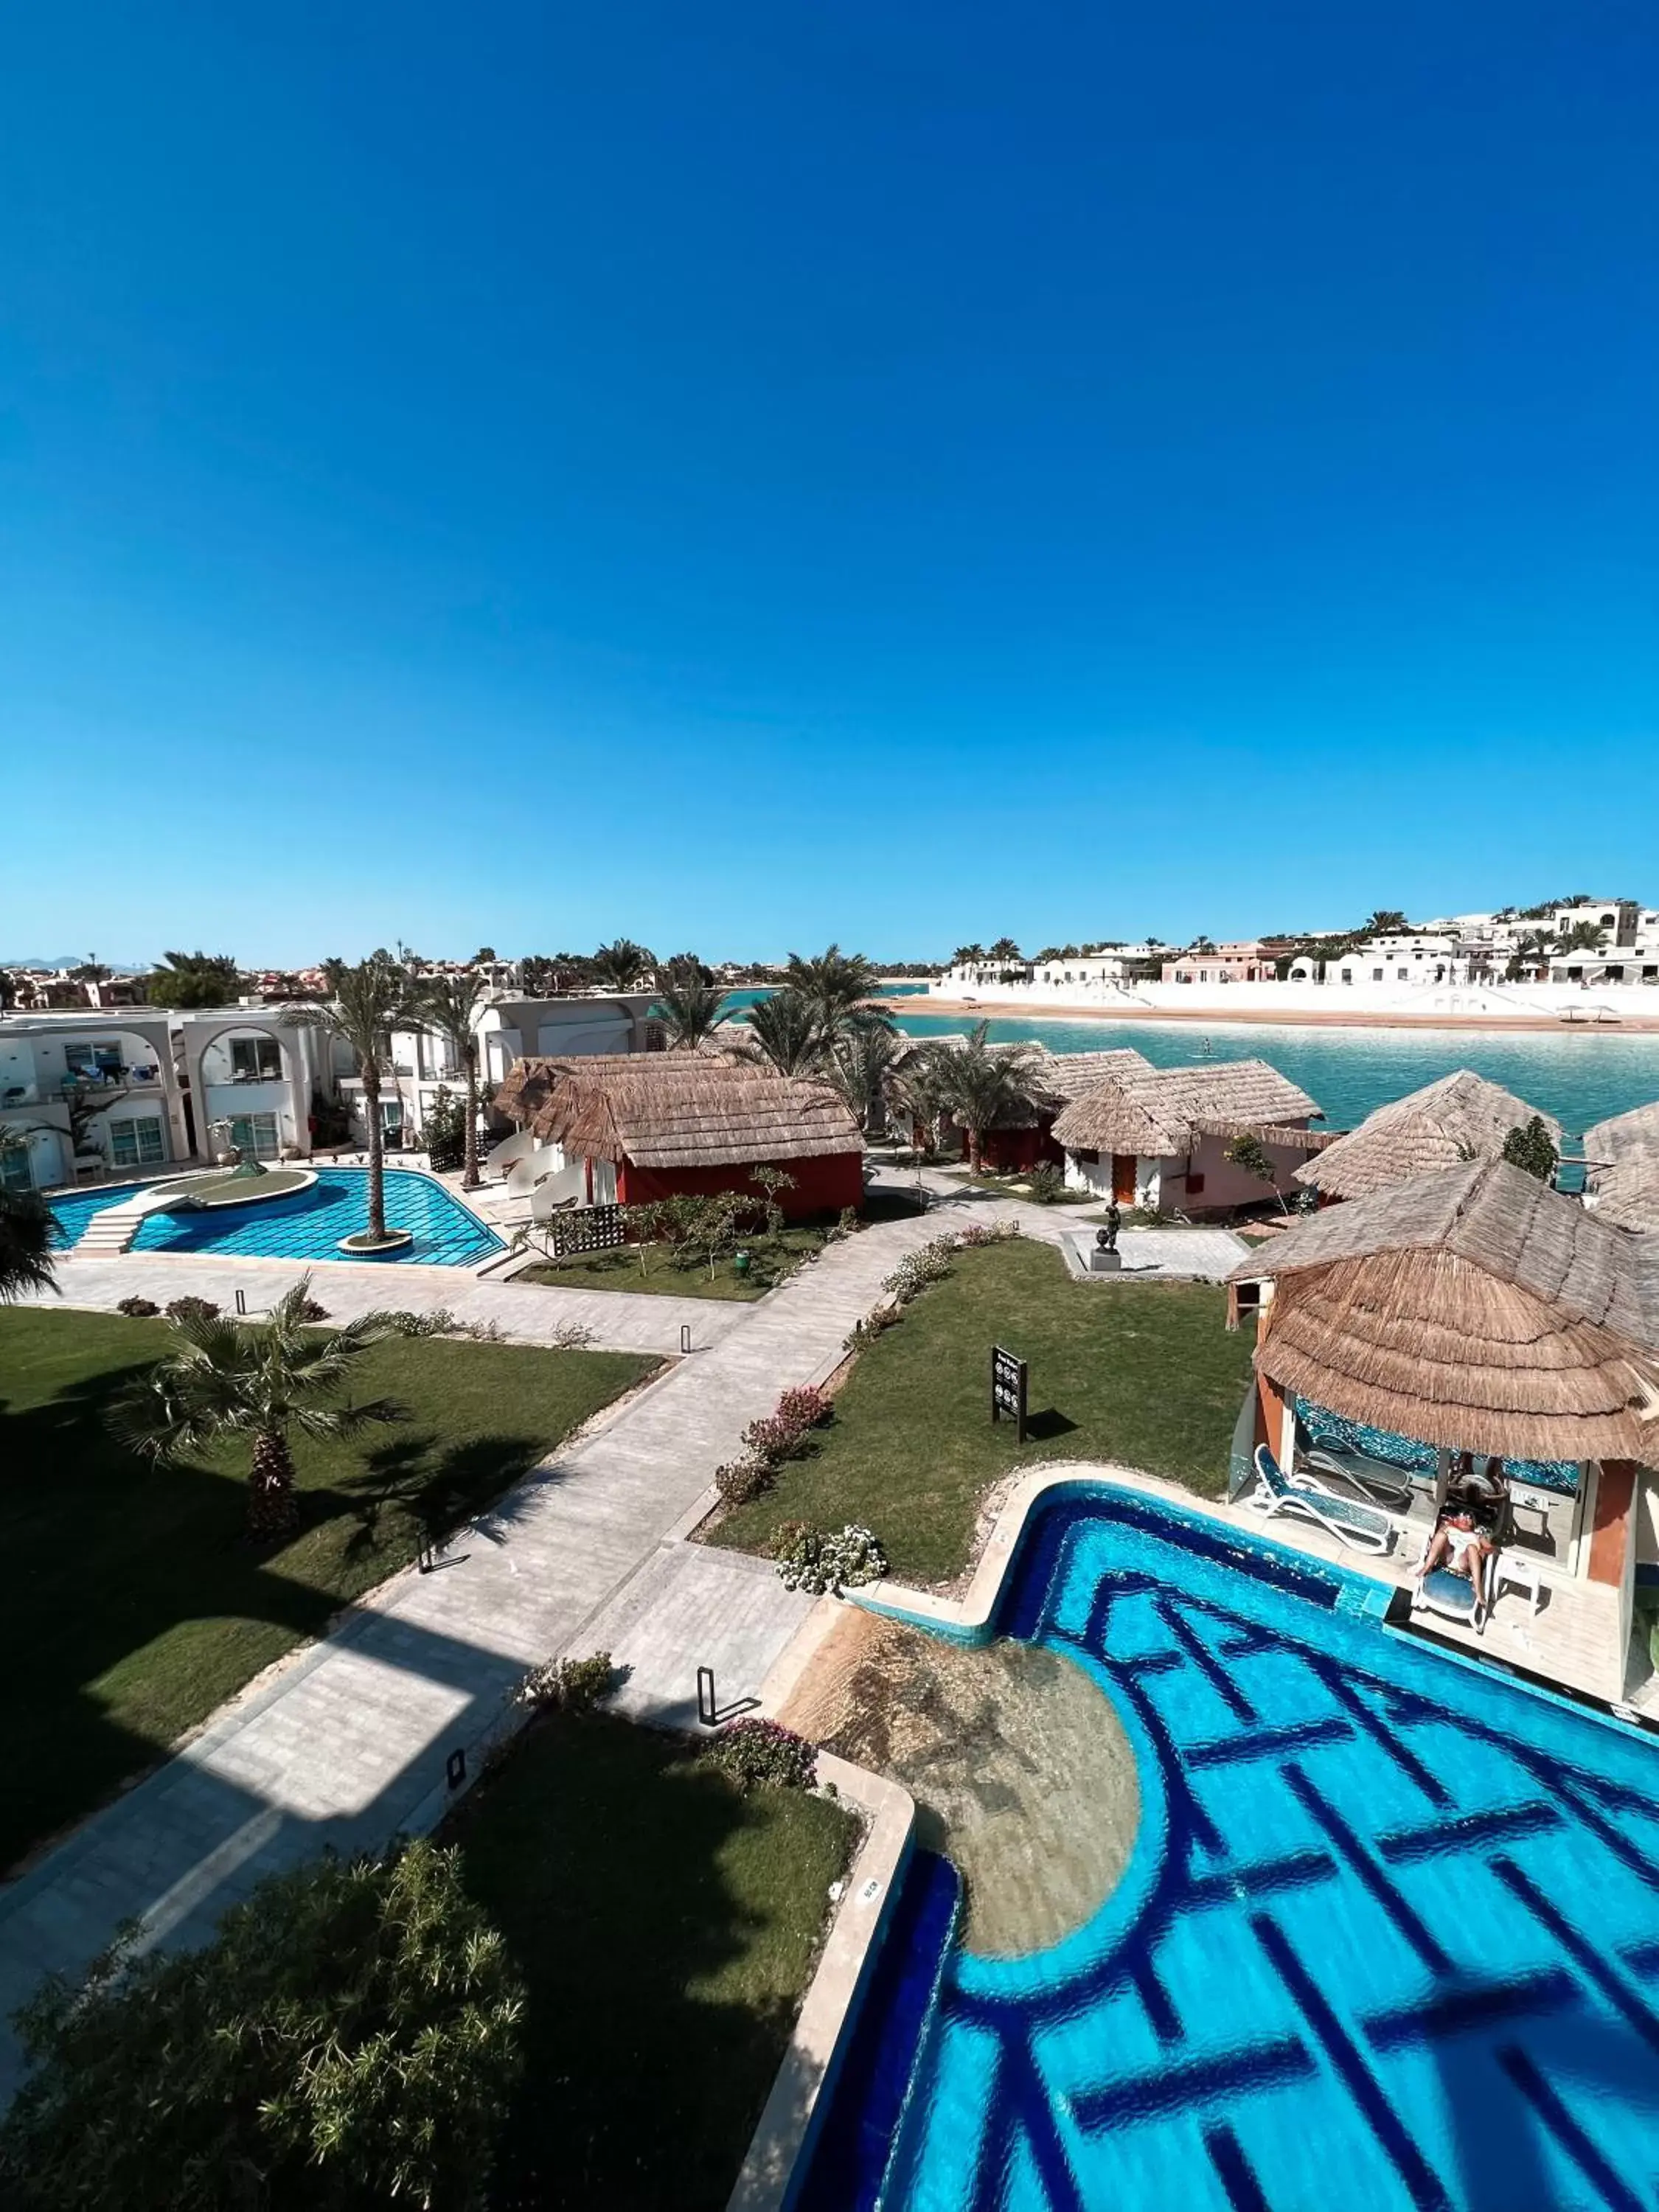 Pool View in Panorama Bungalows Resort El Gouna